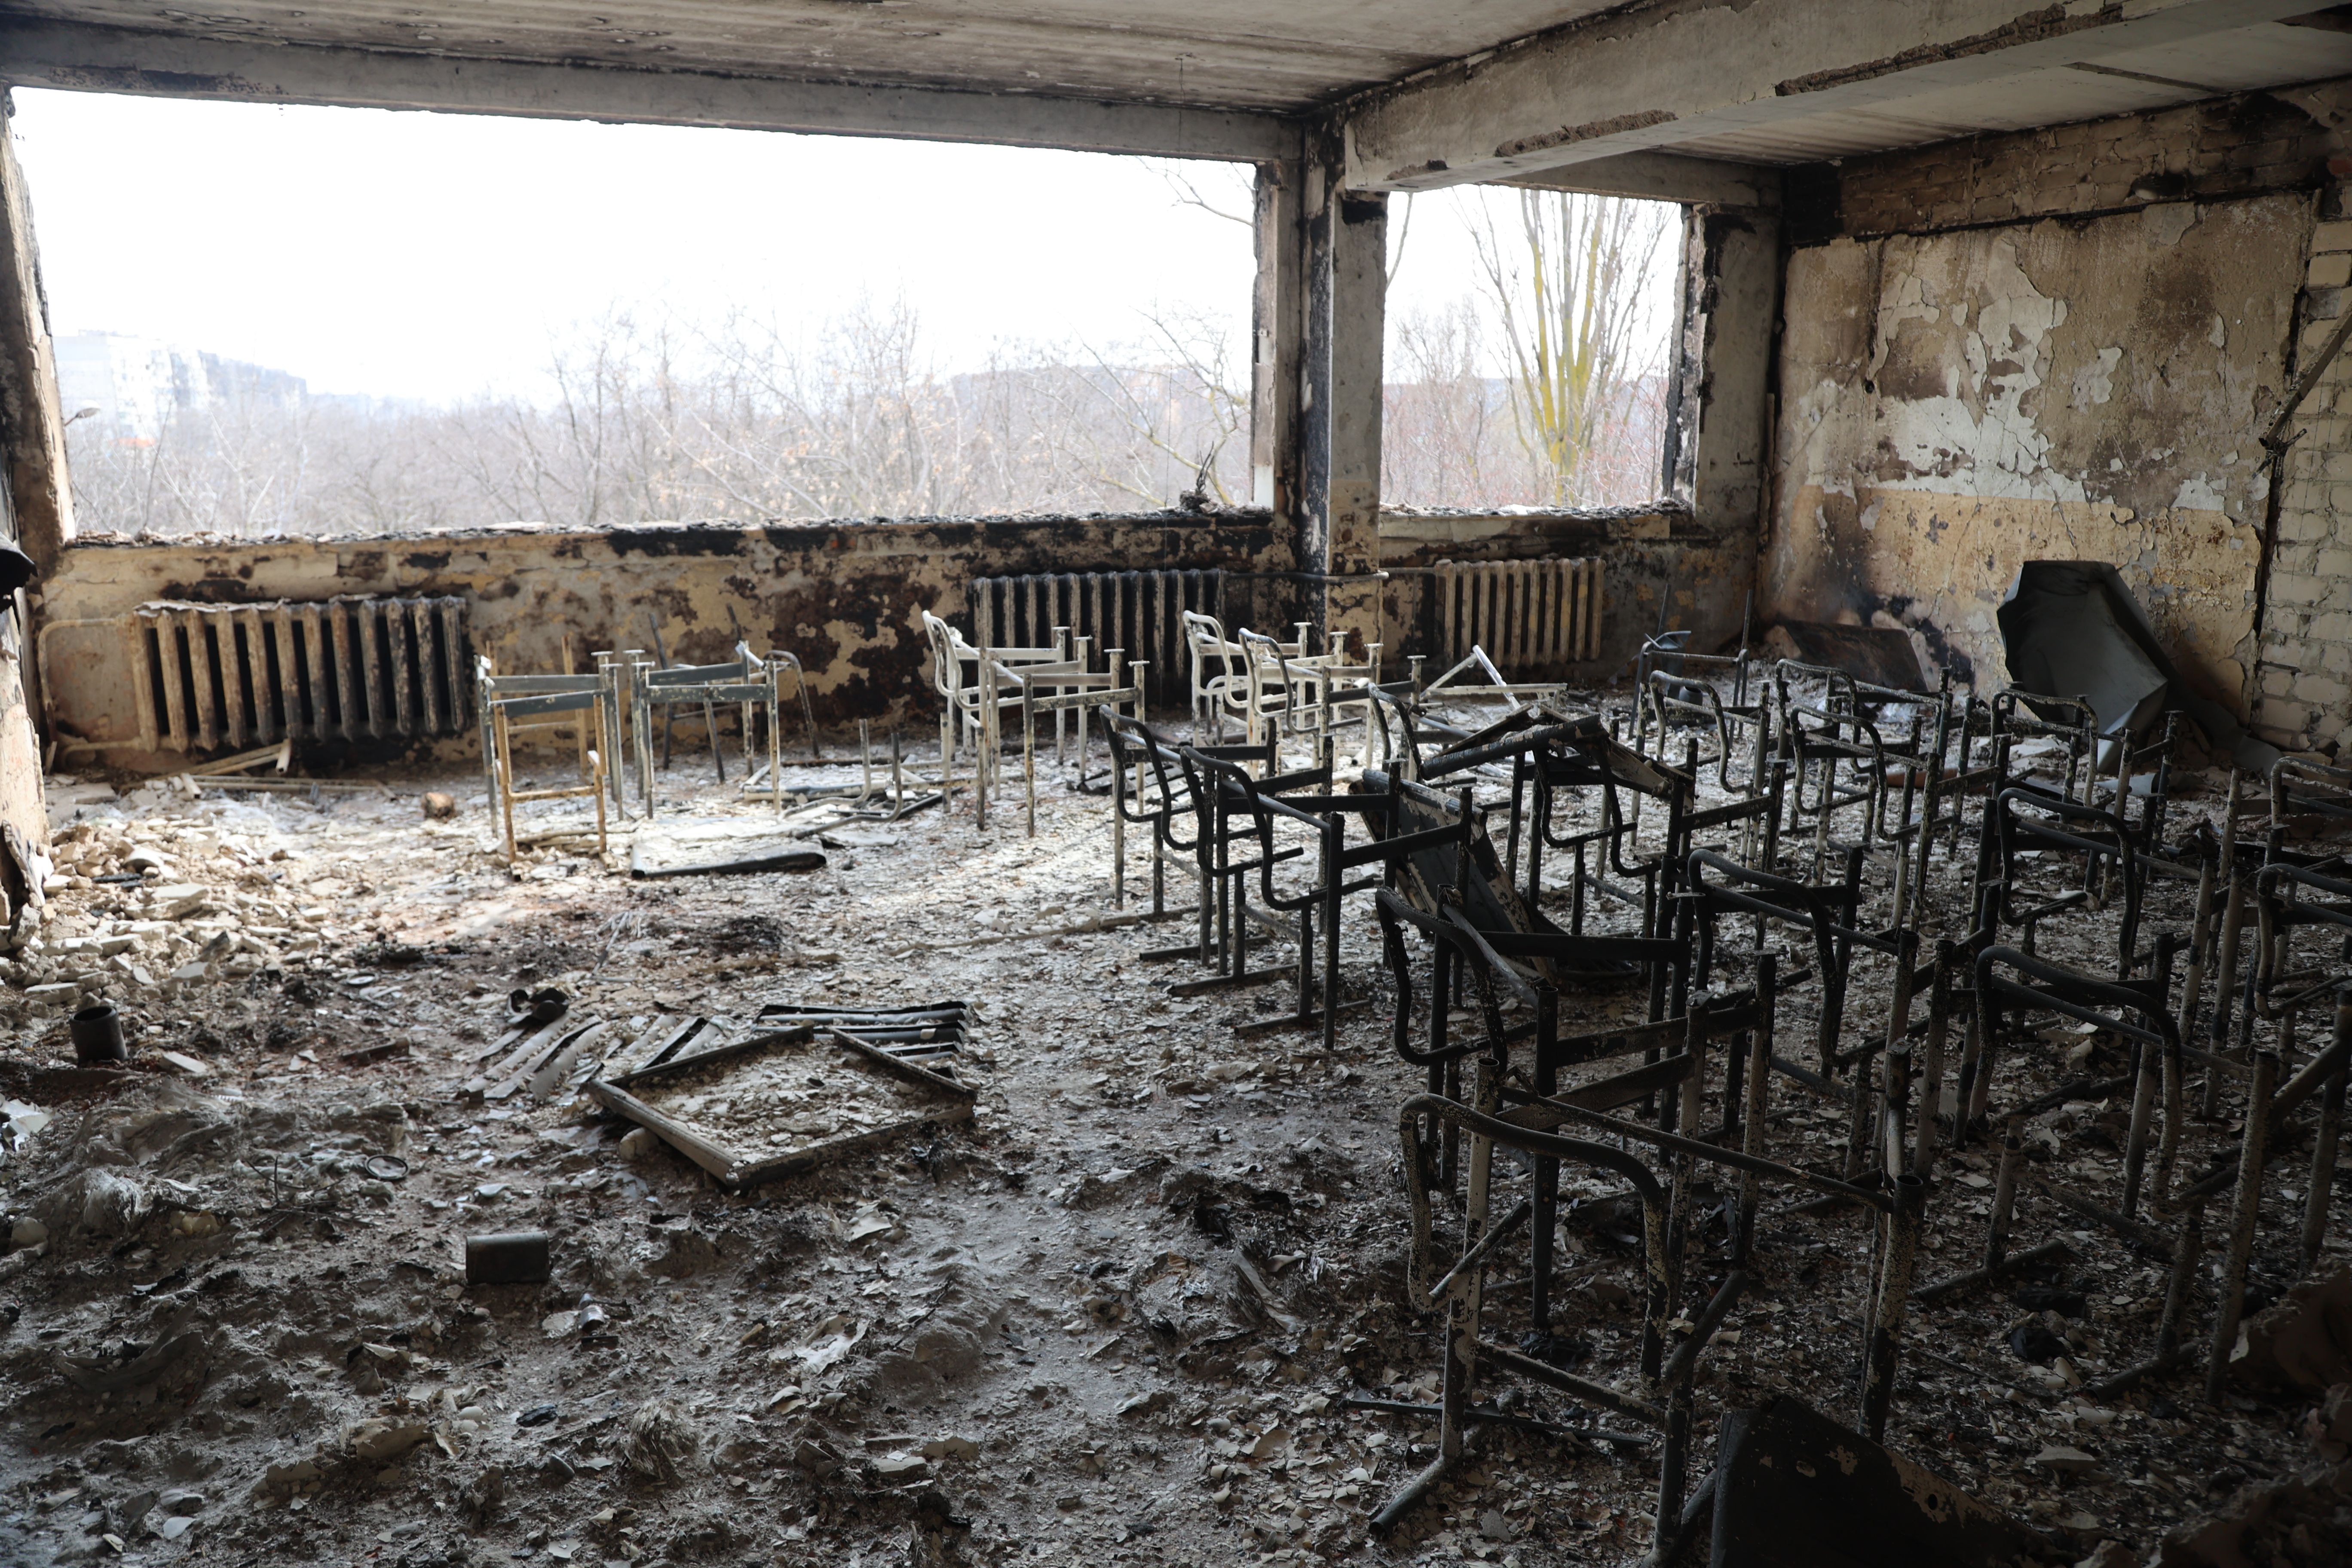     Widok zniszczonej szkoły po zbombardowaniu ukraińskiego miasta Mariupol, będącego pod kontrolą armii rosyjskiej i prorosyjskich separatystów, 29 marca.